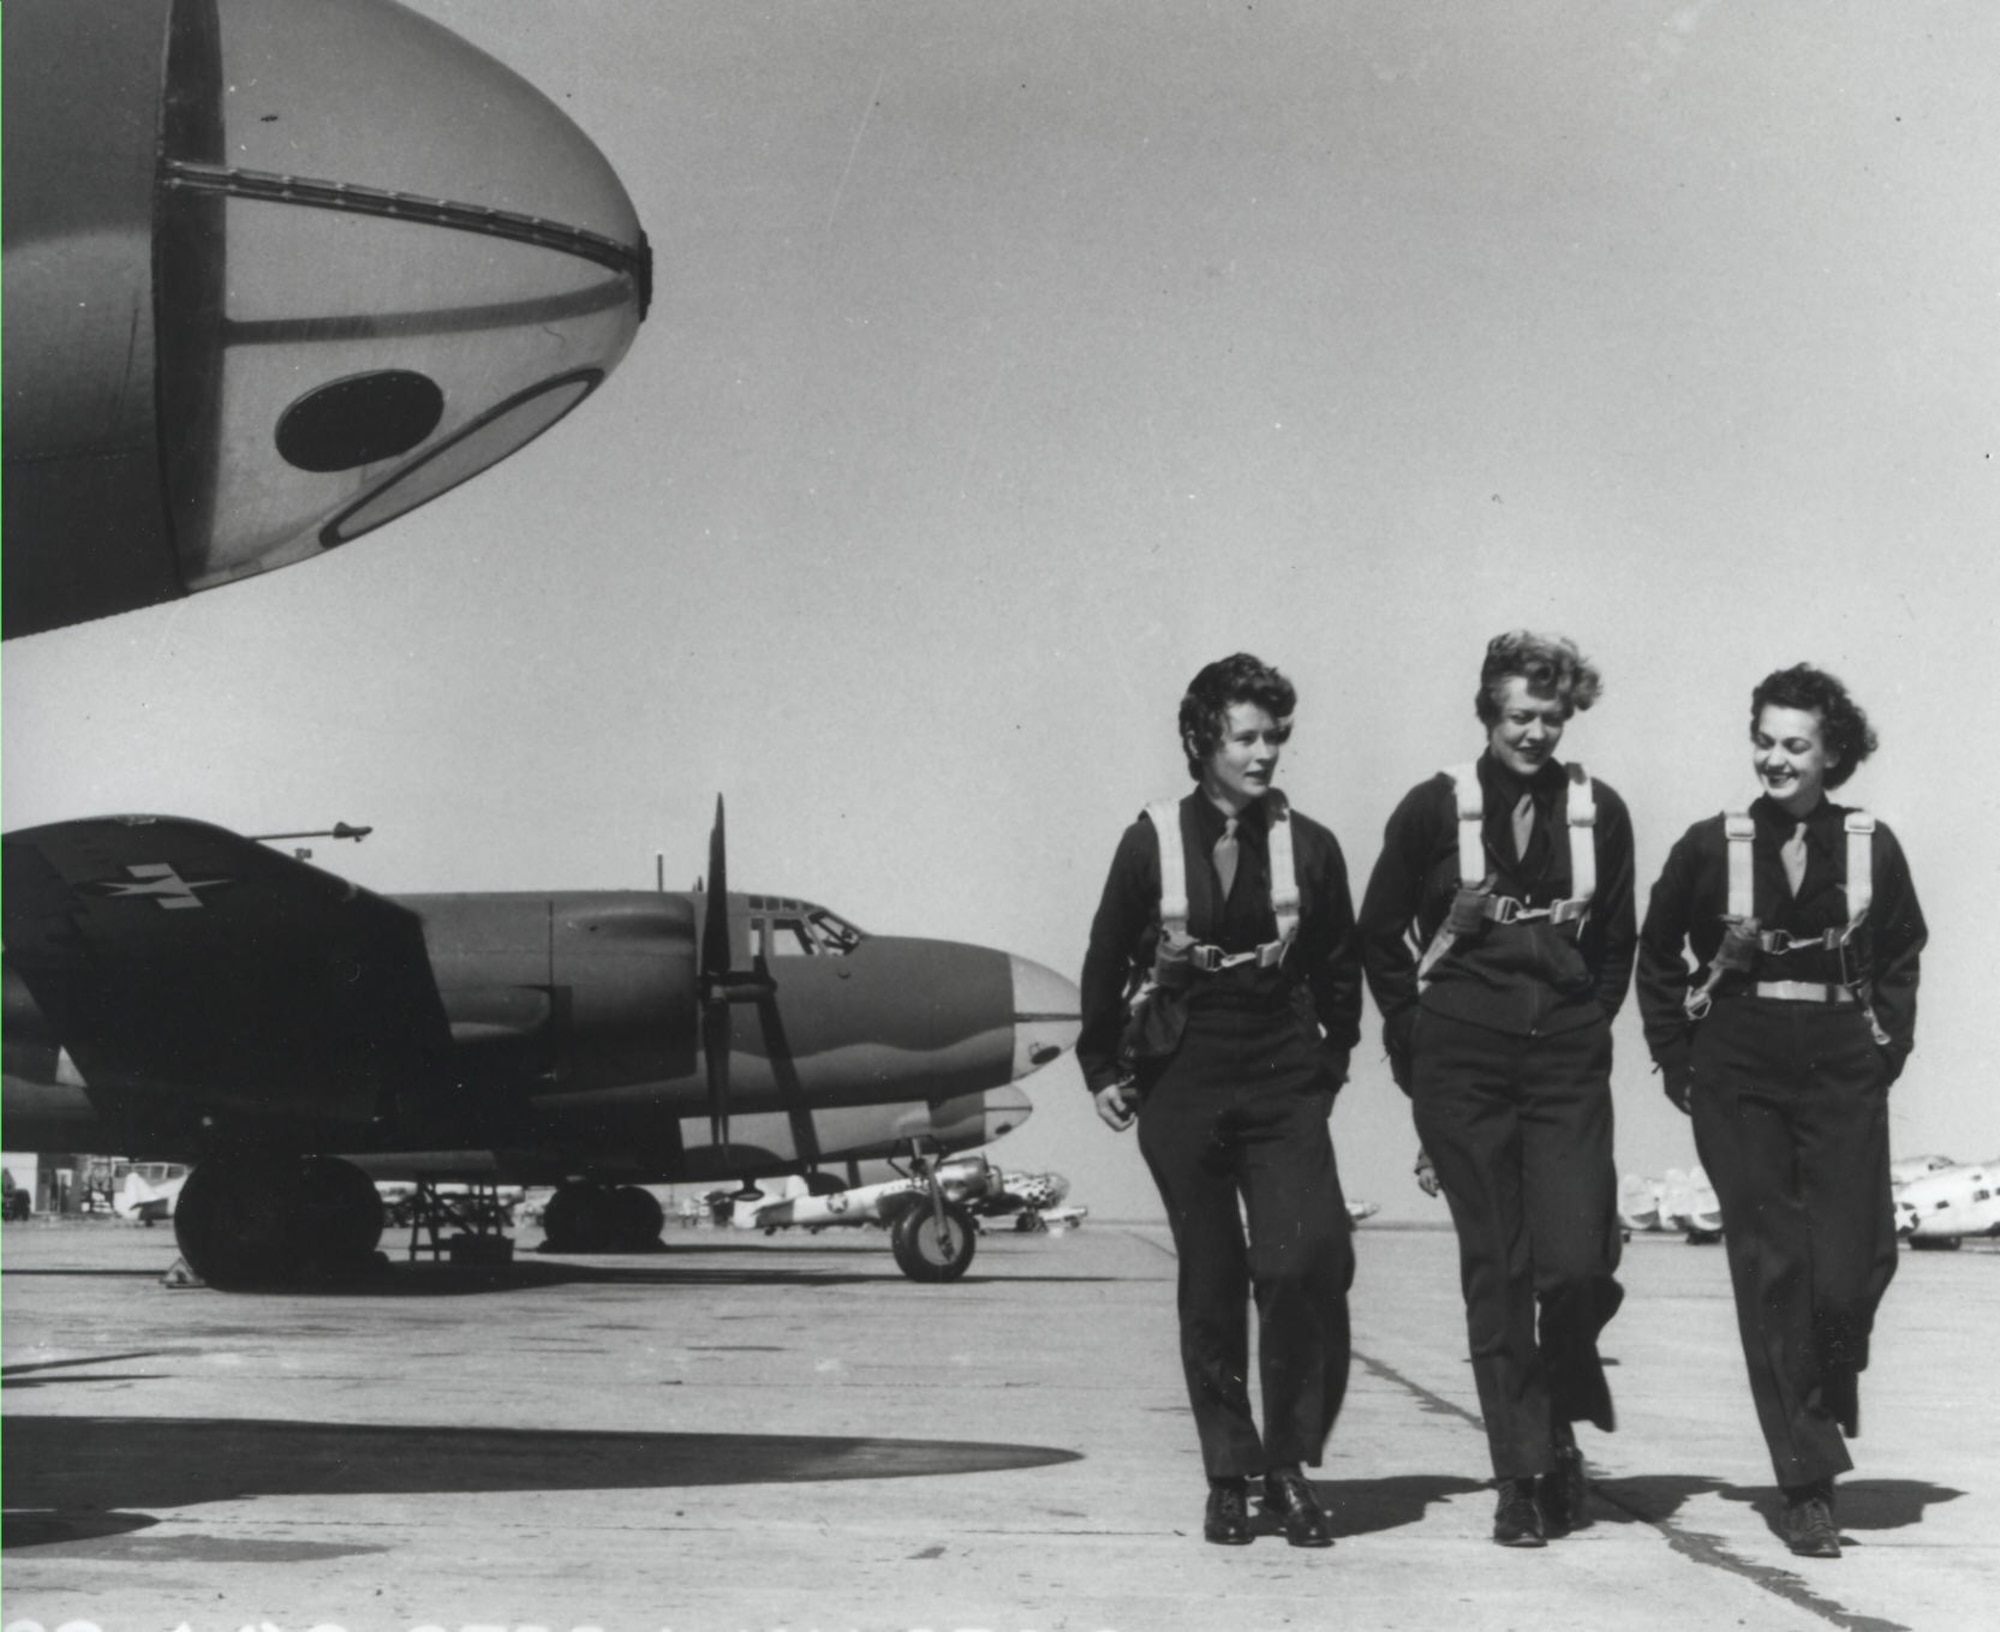 WASPs on runway, Laredo Texas, 1944.